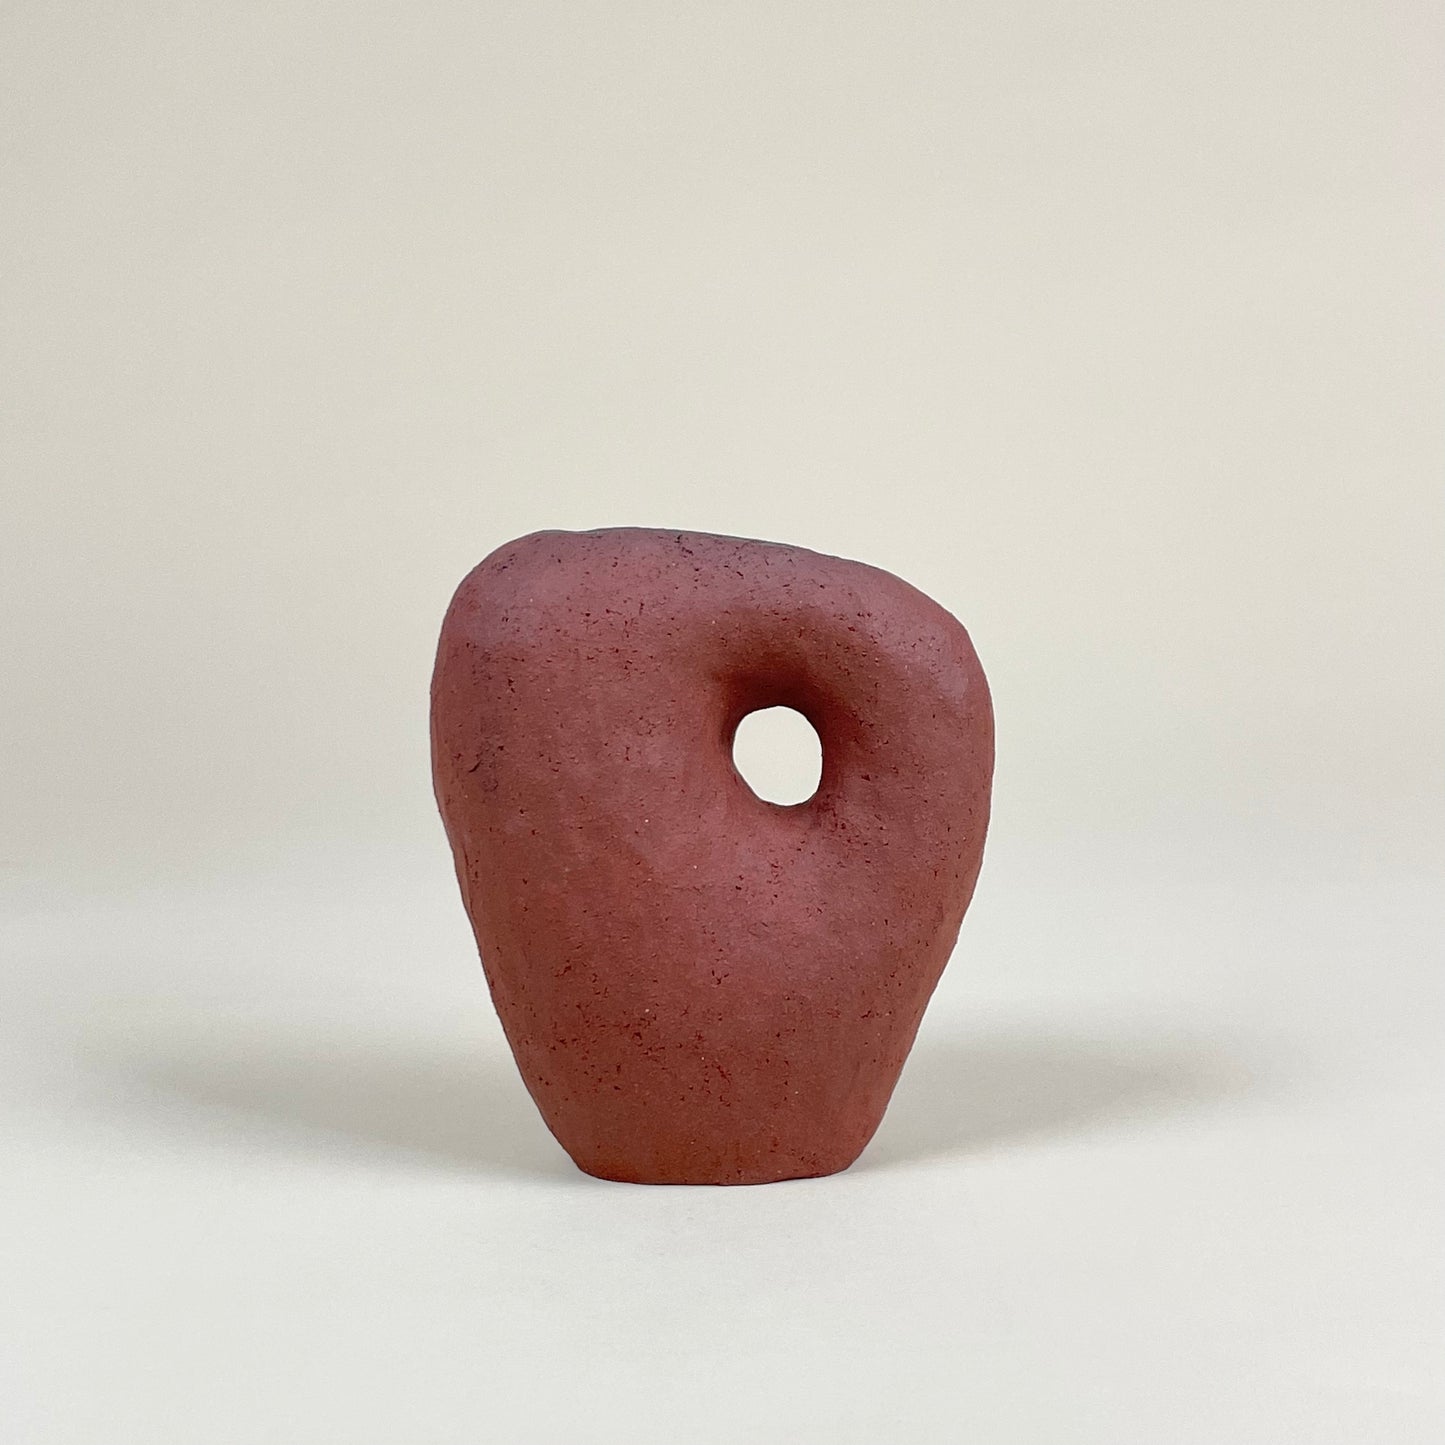 Ceramic vase in red clay by Malwina Kleparska